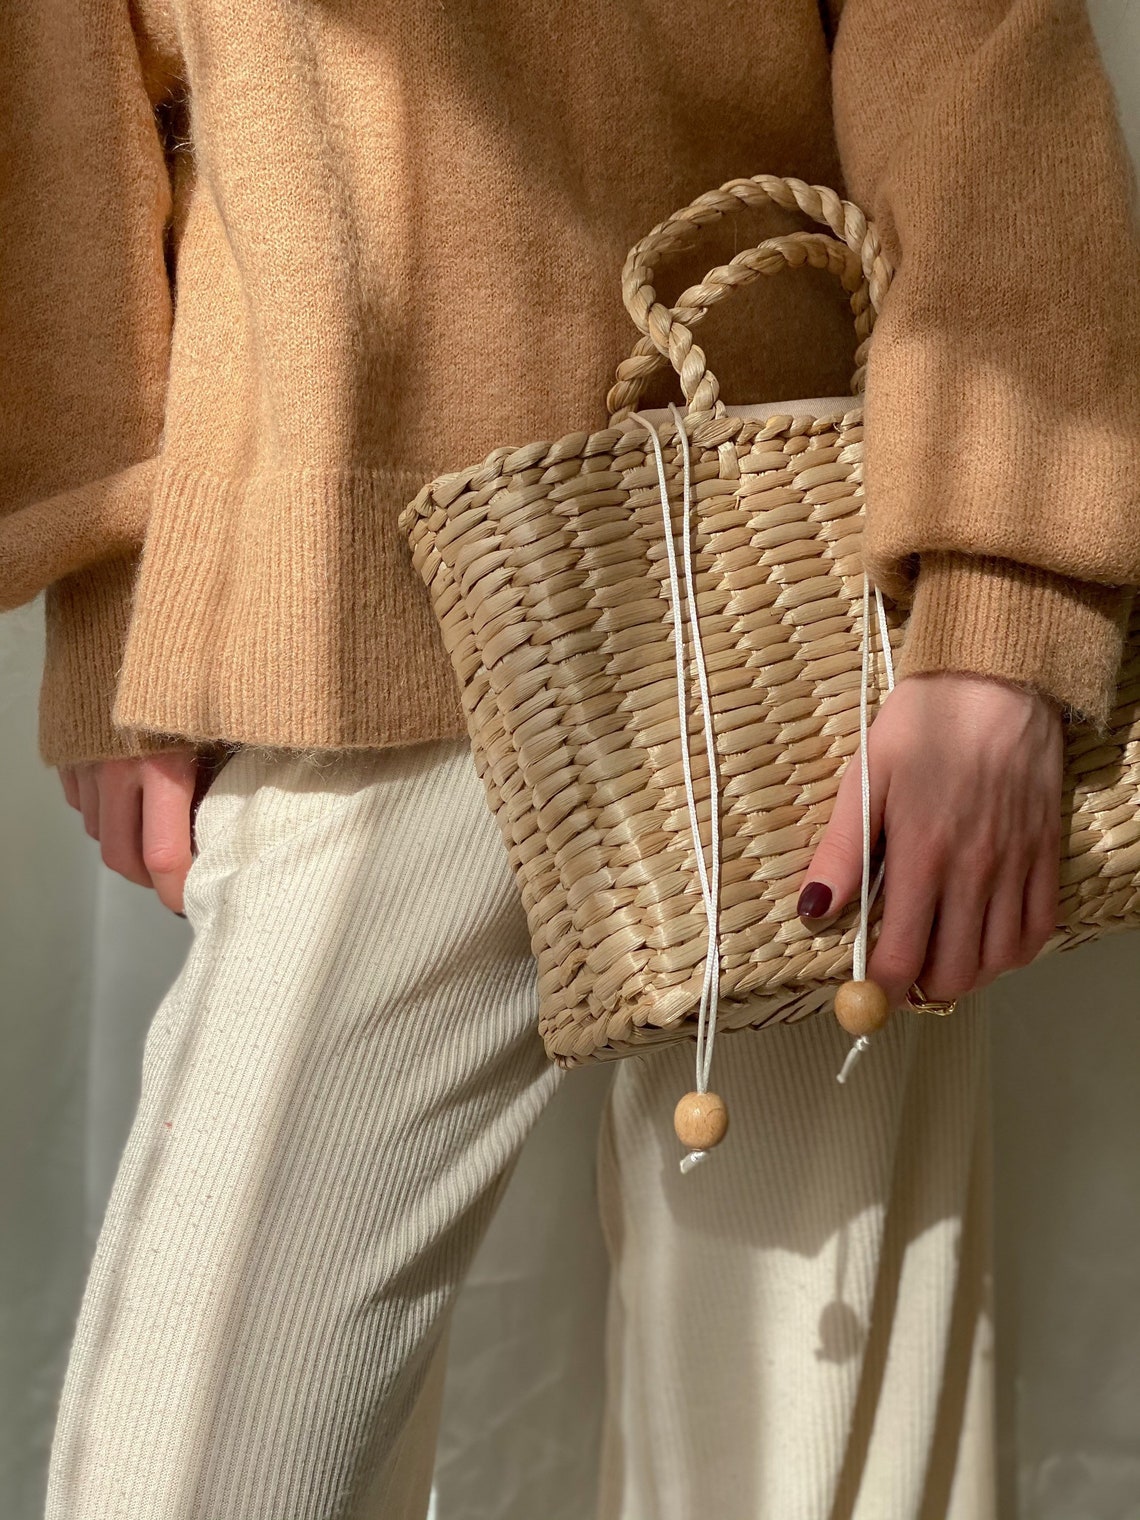 Handmade Summer Bag Woven Straw Tote Handbag | Etsy